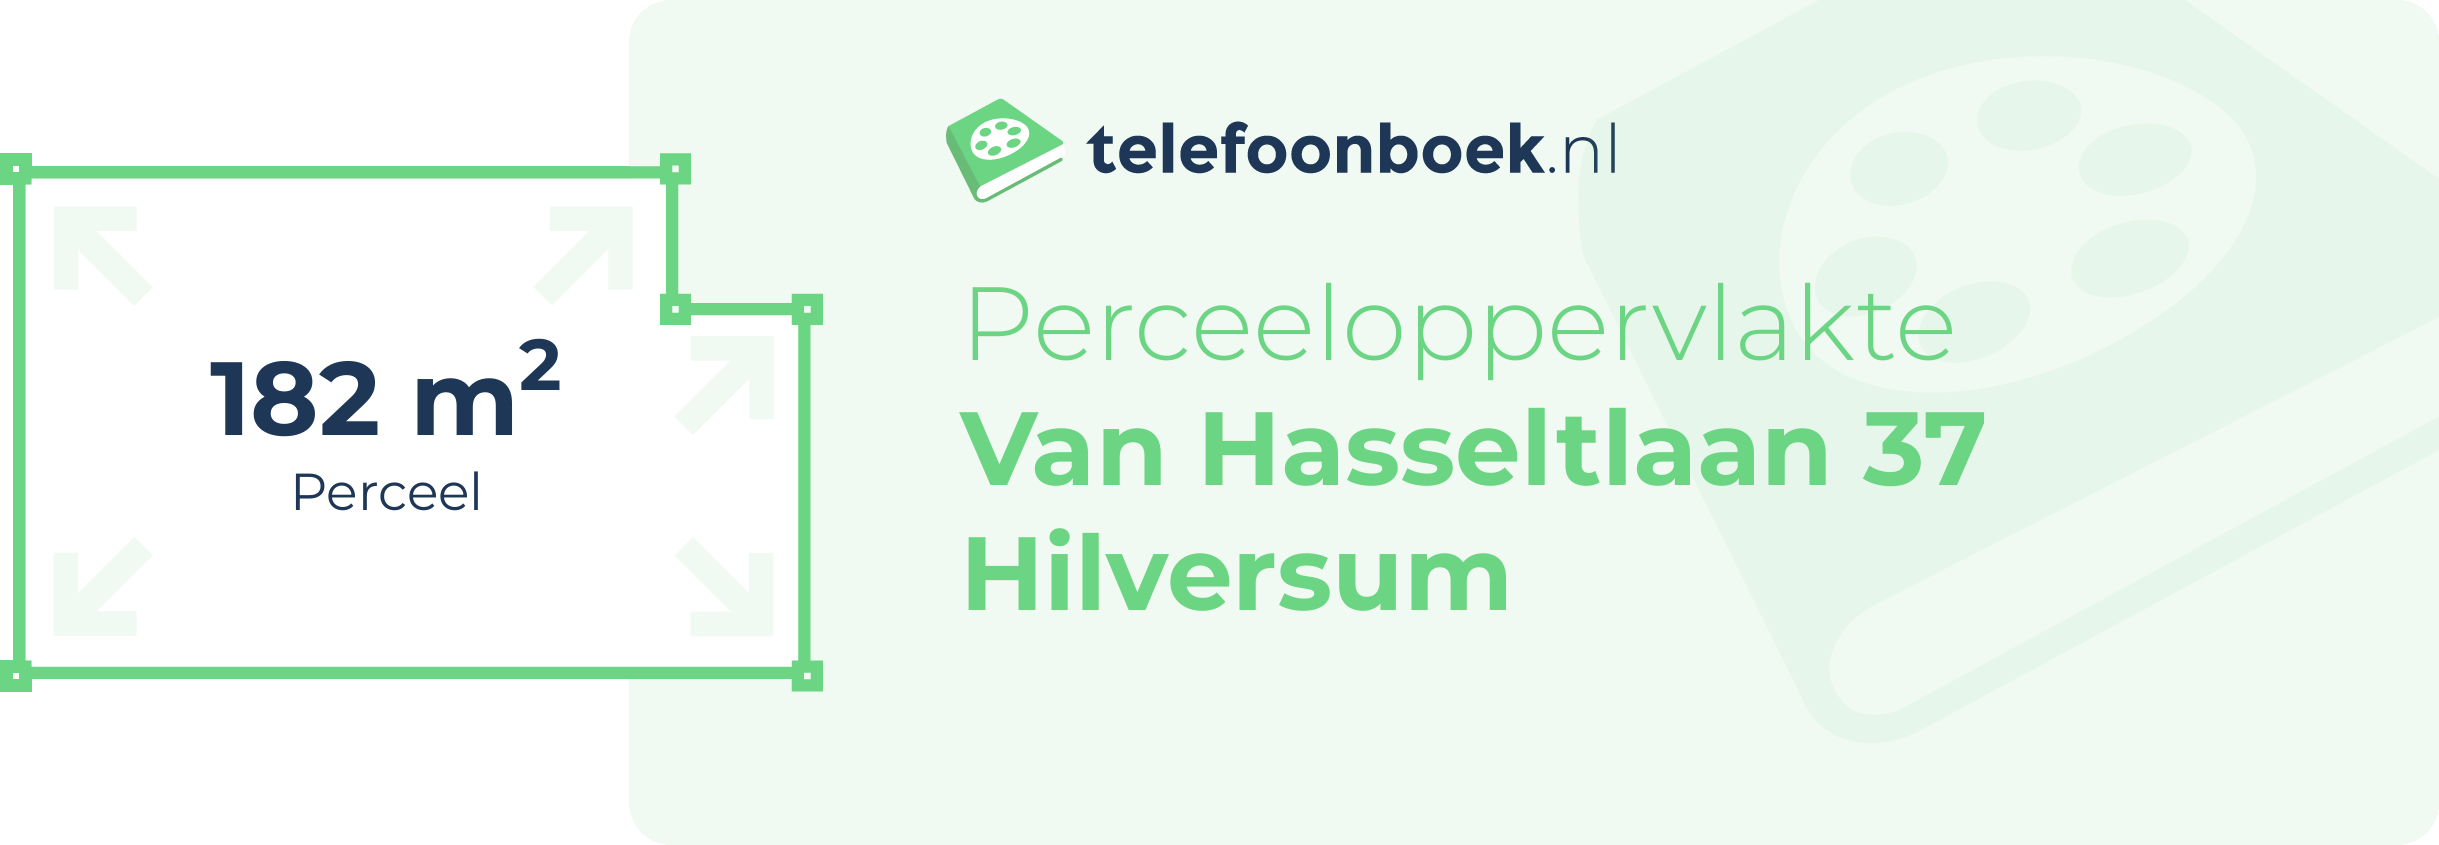 Perceeloppervlakte Van Hasseltlaan 37 Hilversum